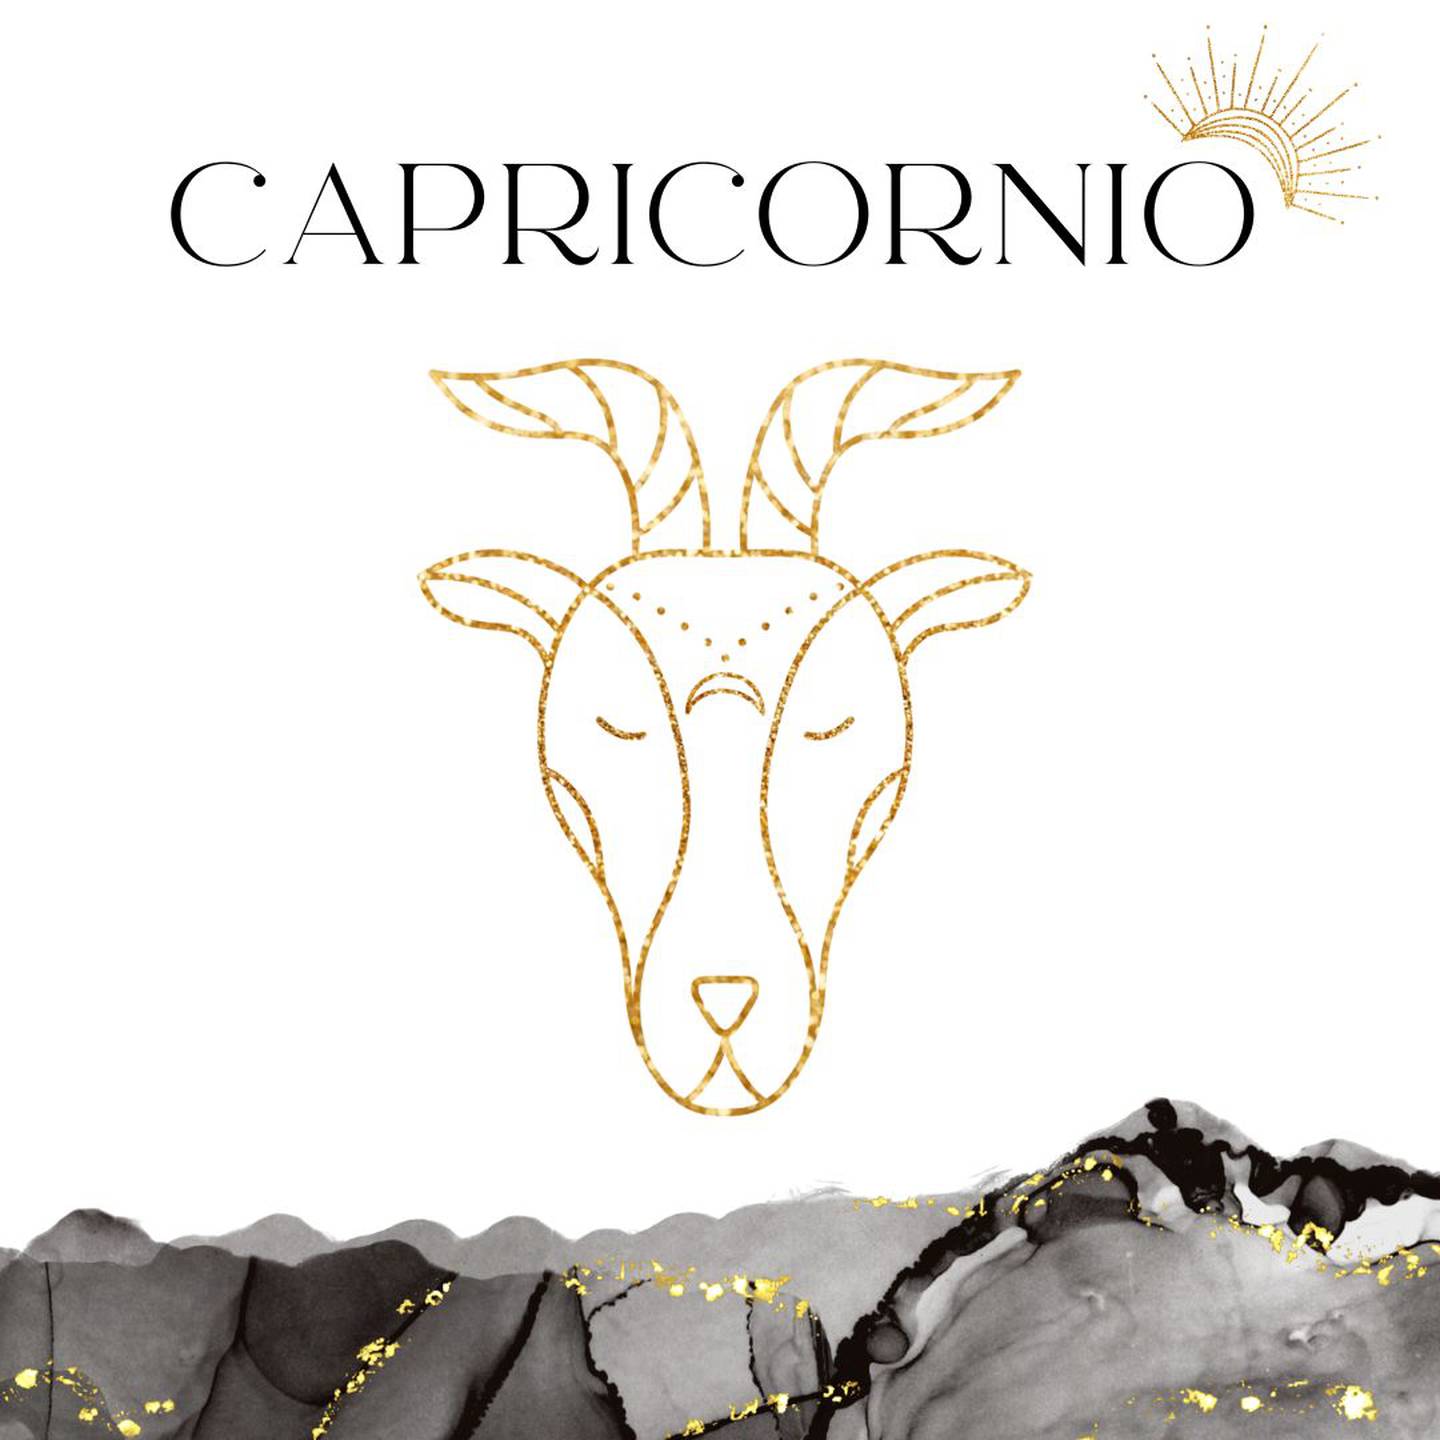 Palabra 'CAPRICORNIO' en letras grandes y negras en el centro. Debajo, símbolo del signo de Capricornio: una cabra dorada.